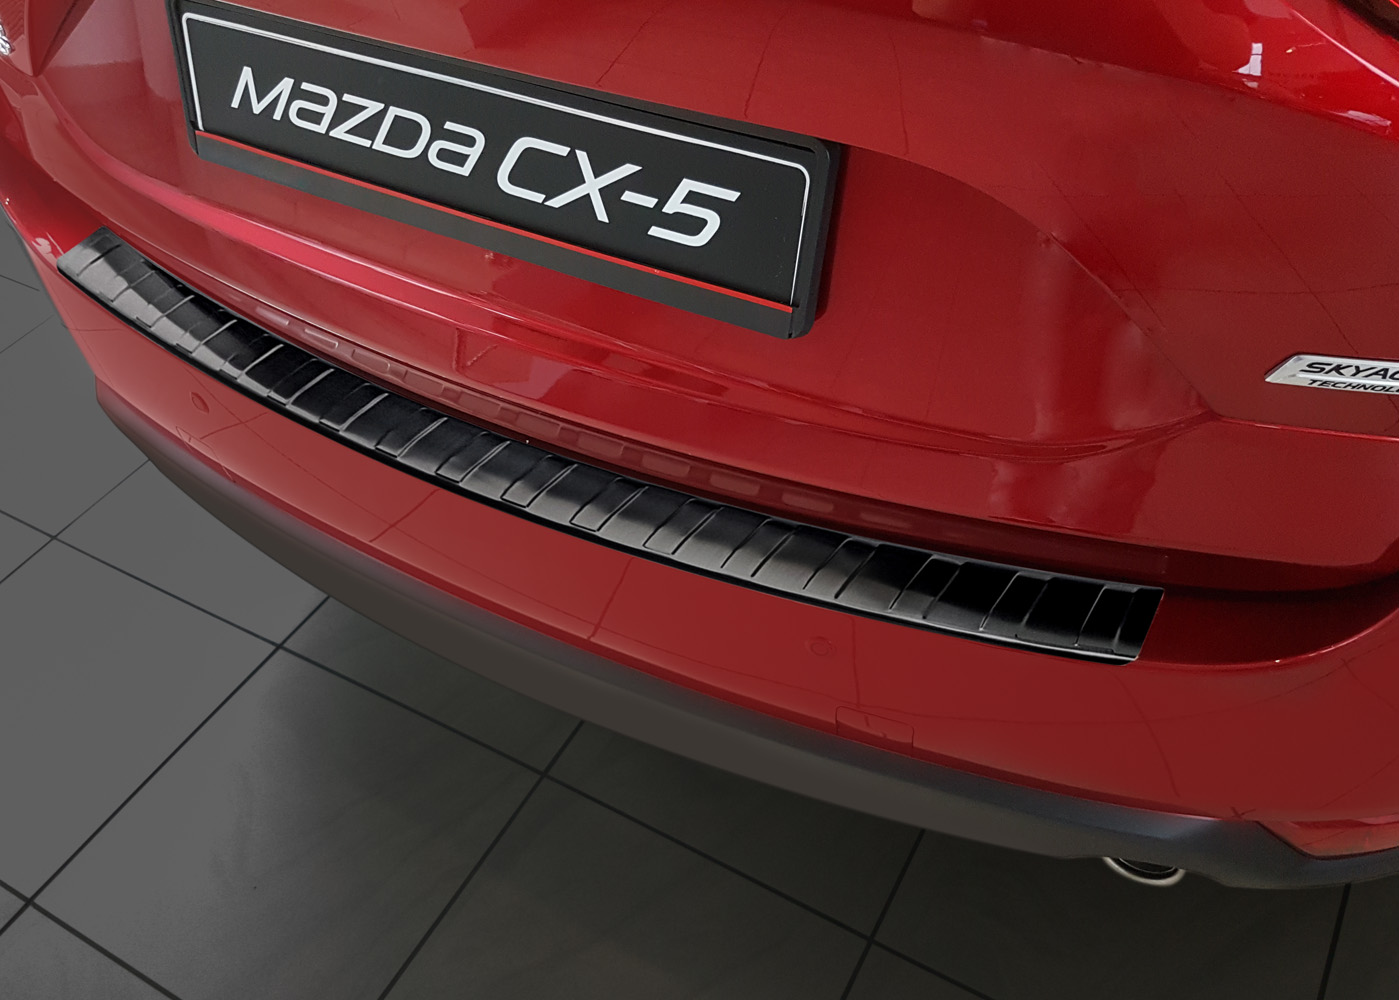 Ladekantenschutz für Mazda CX-5 - Schutz für die Ladekante Ihres Fahrzeuges